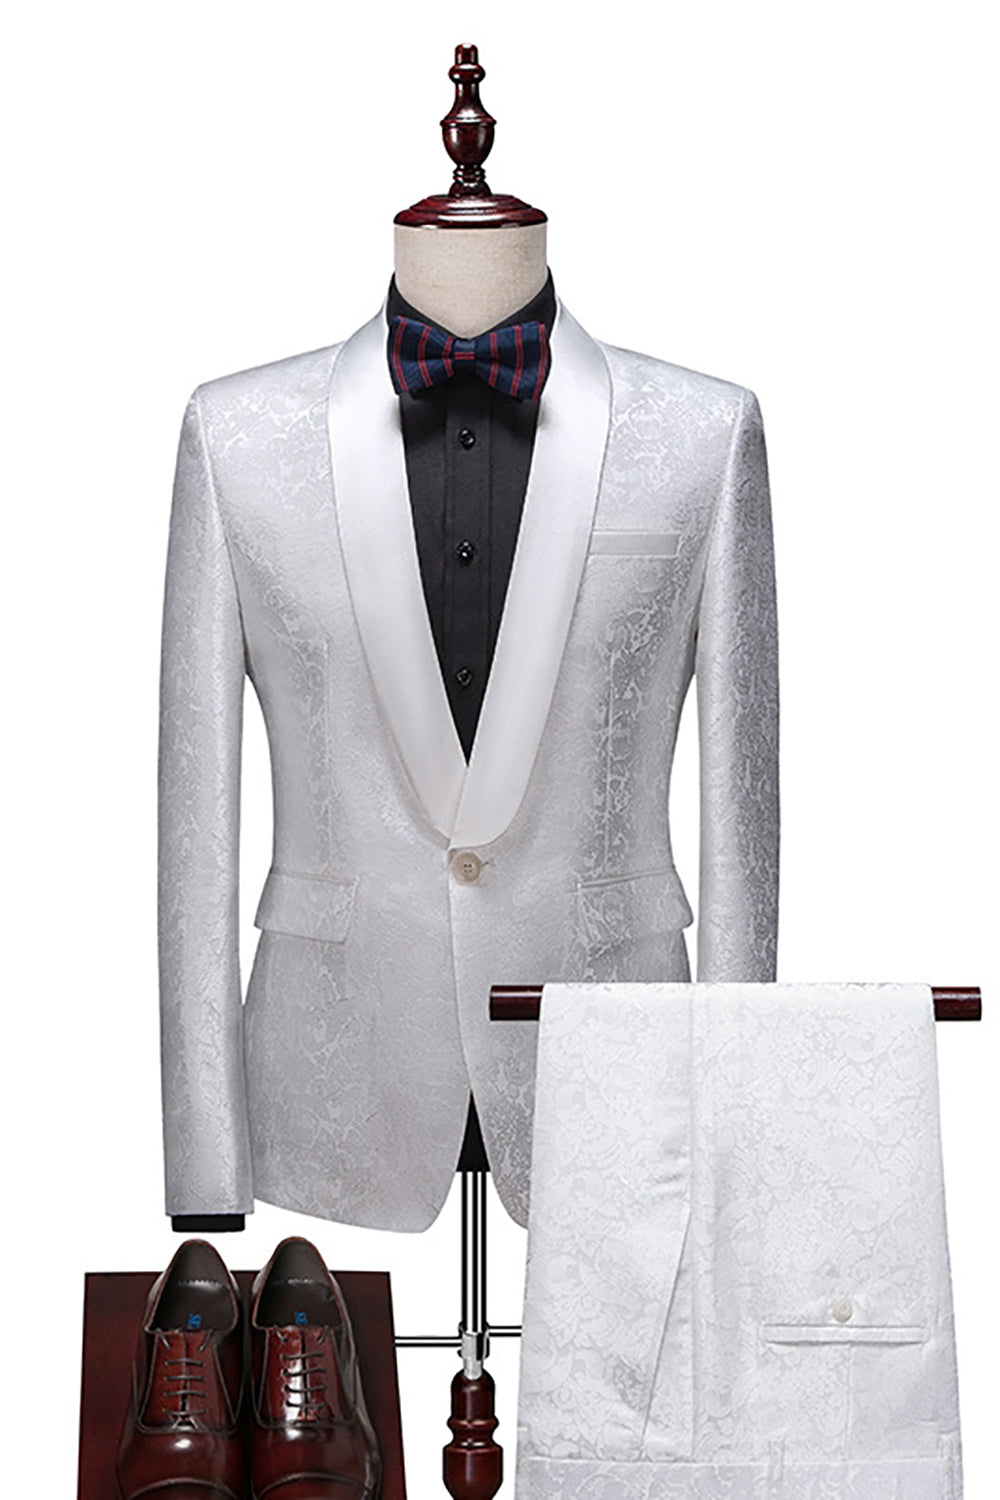 White Jacquard 2-Piece Shawl Lapel Men's Formal Suits